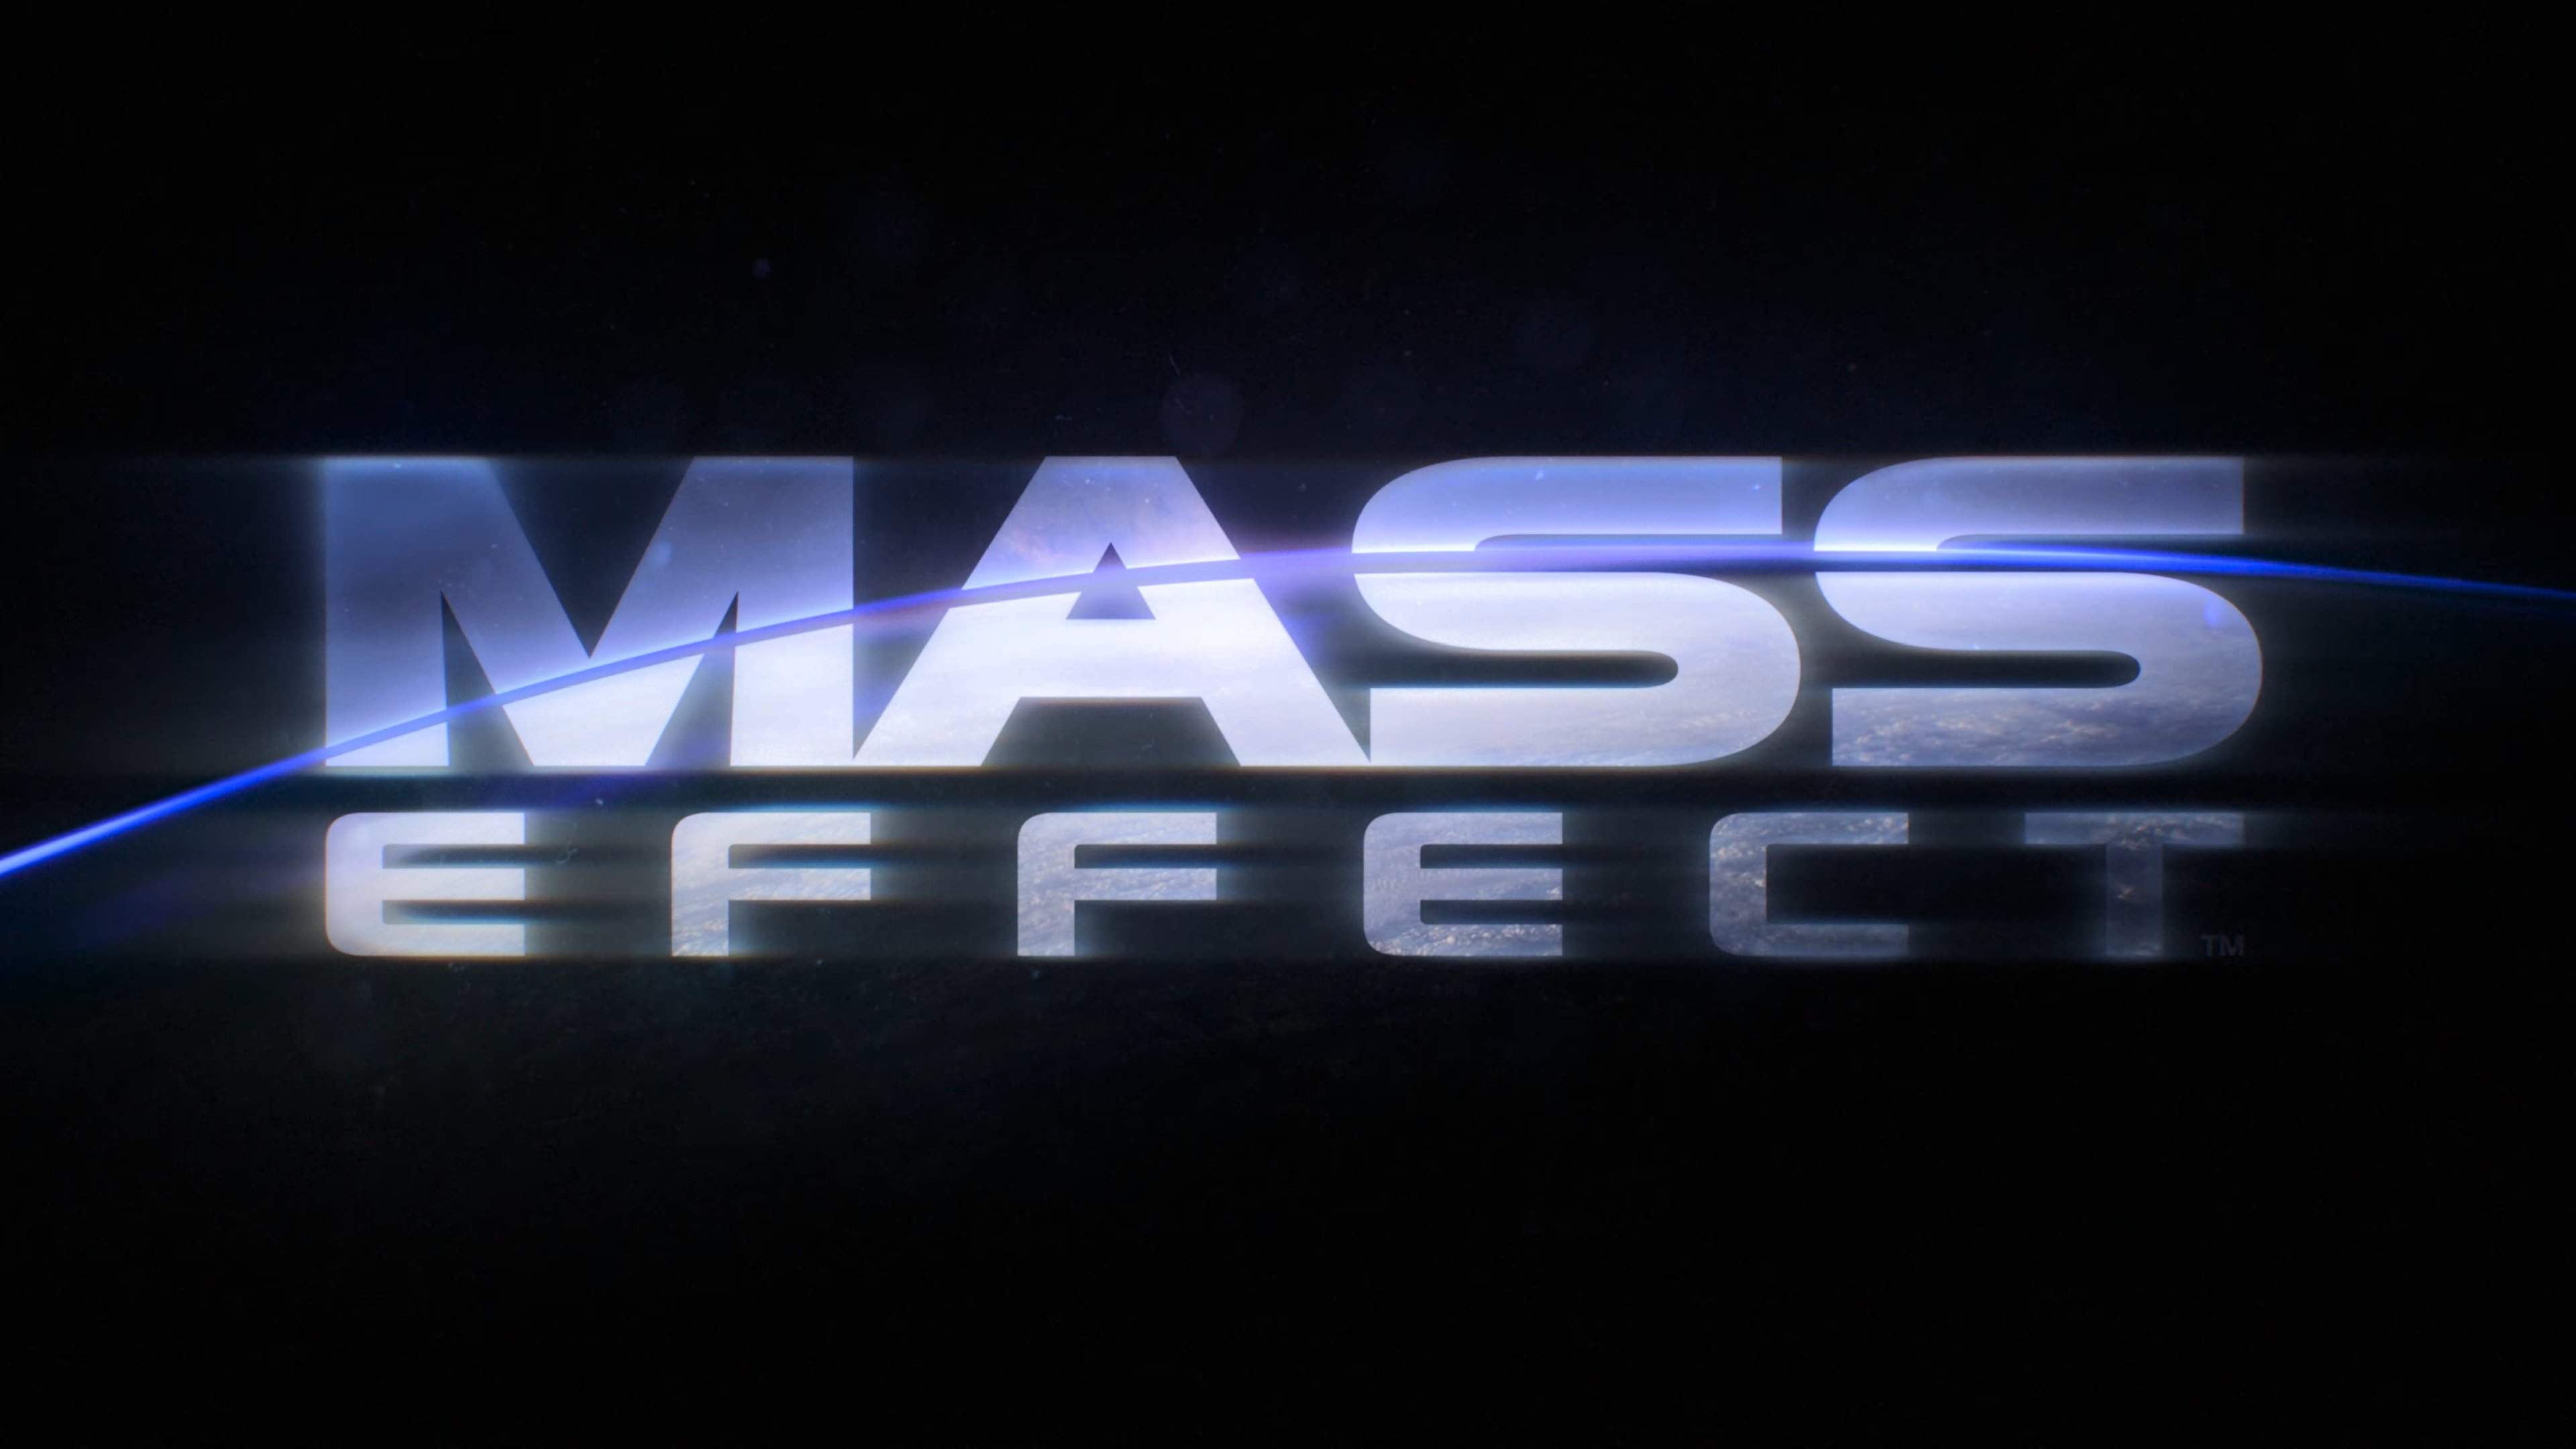 Remastered effects. Значок Mass Effect™ издание Legendary Steam.